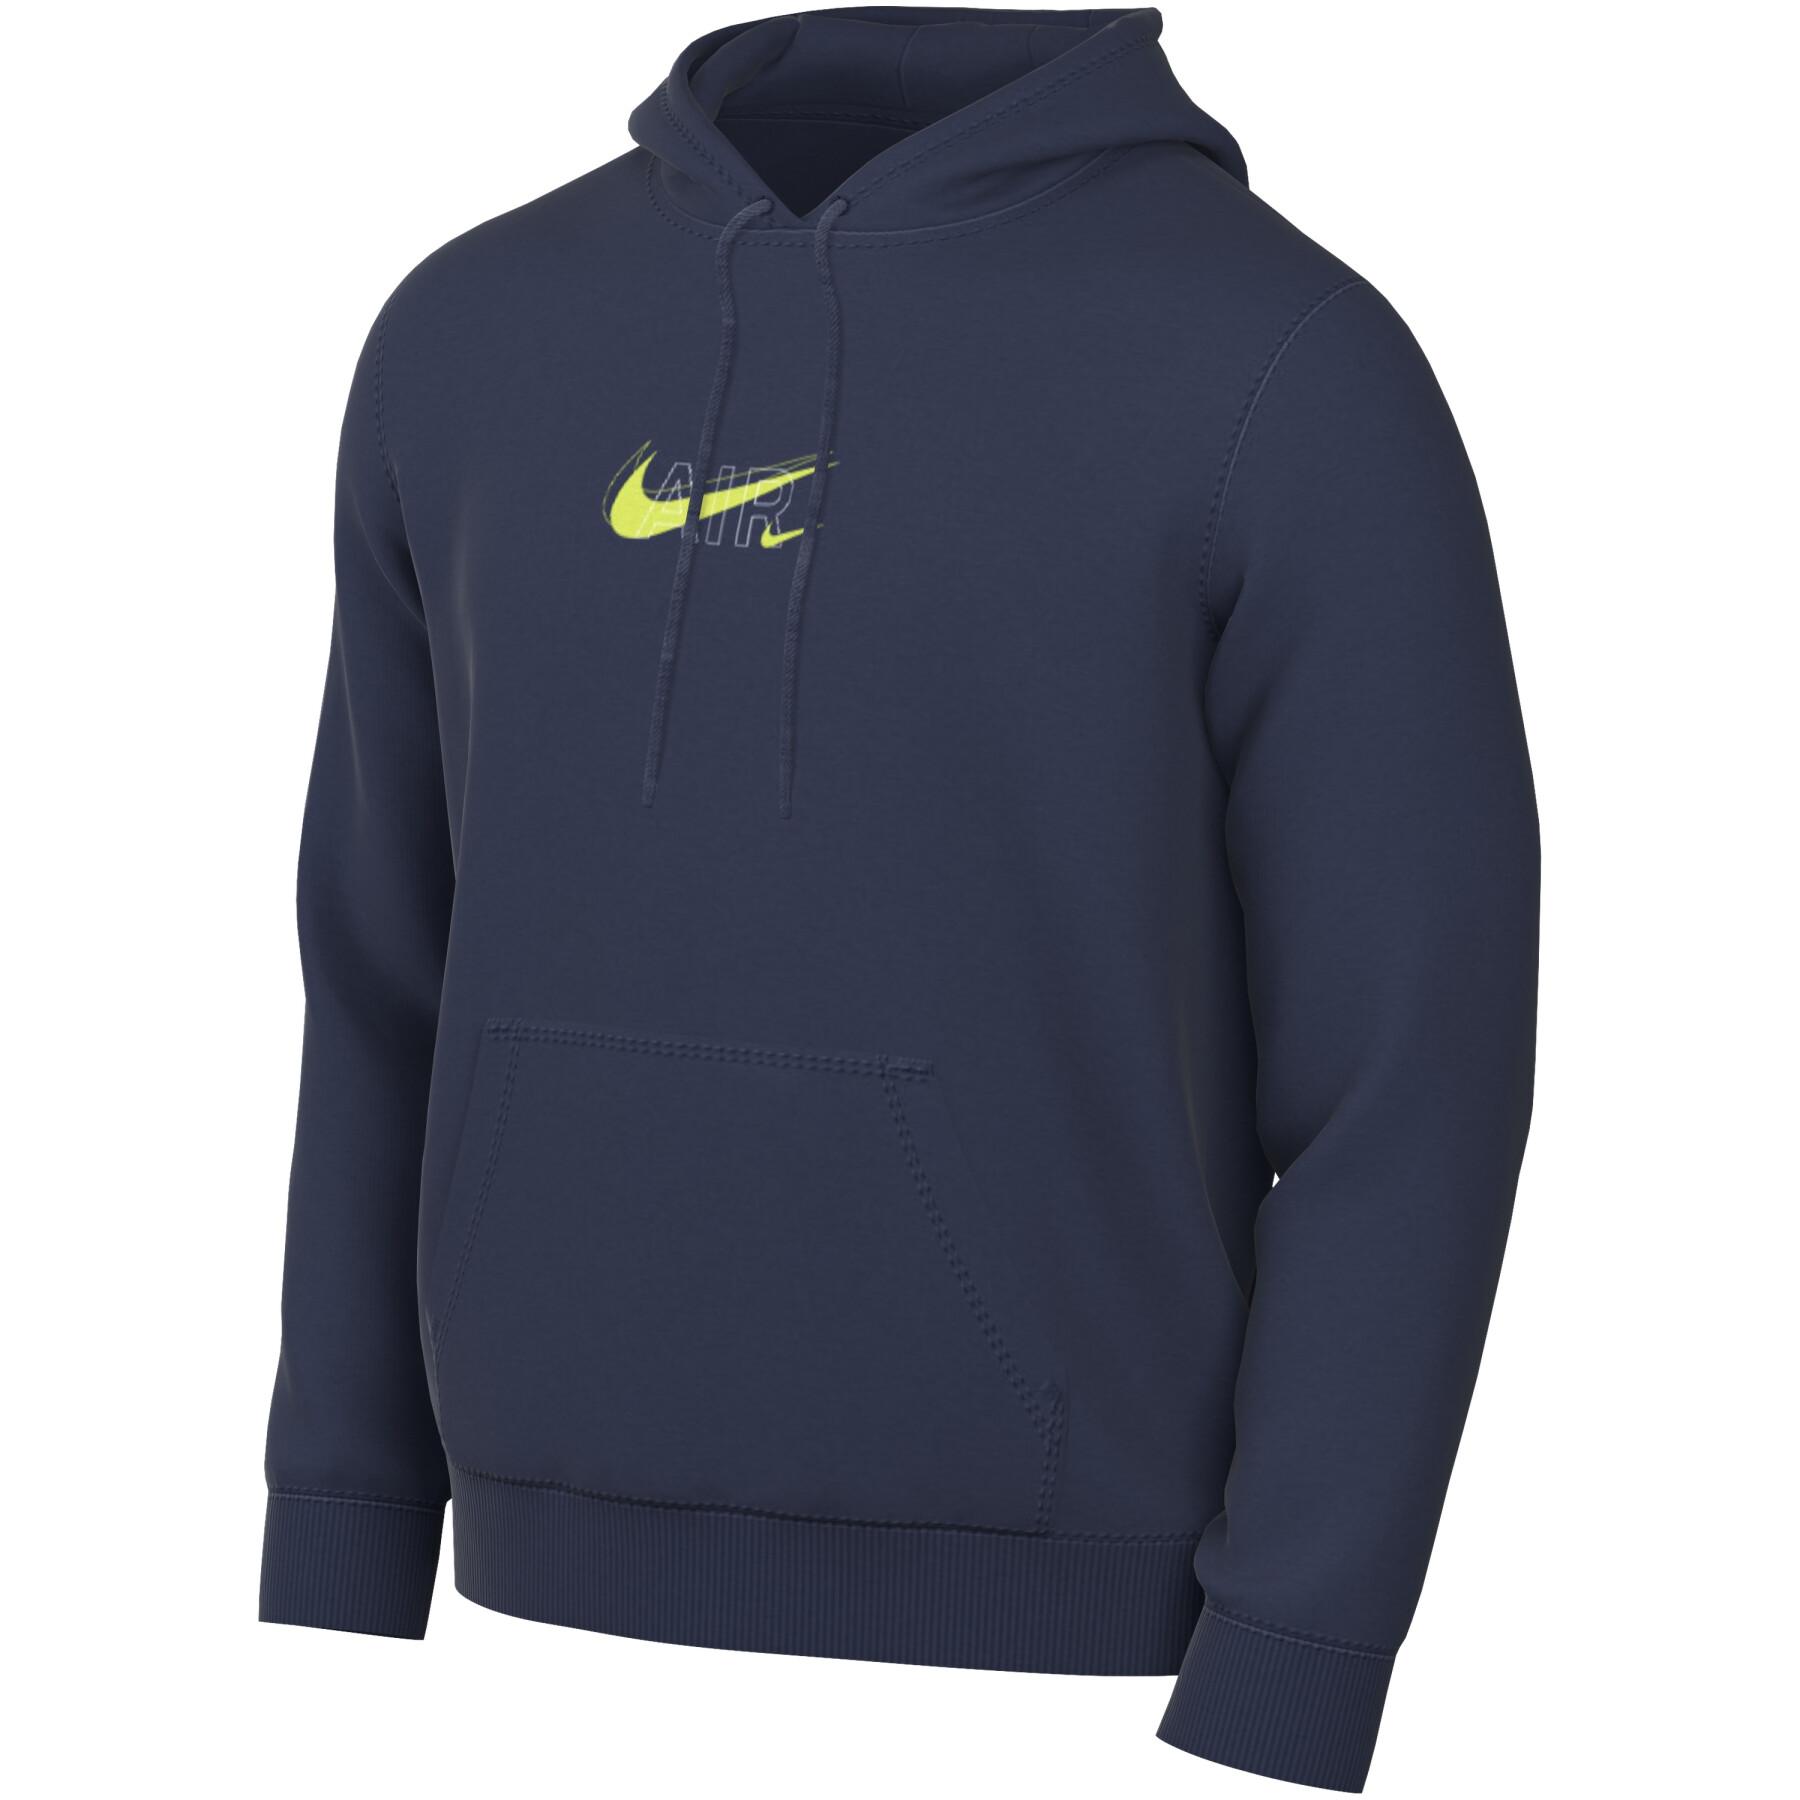 Hooded sweatshirt Nike Sportswear